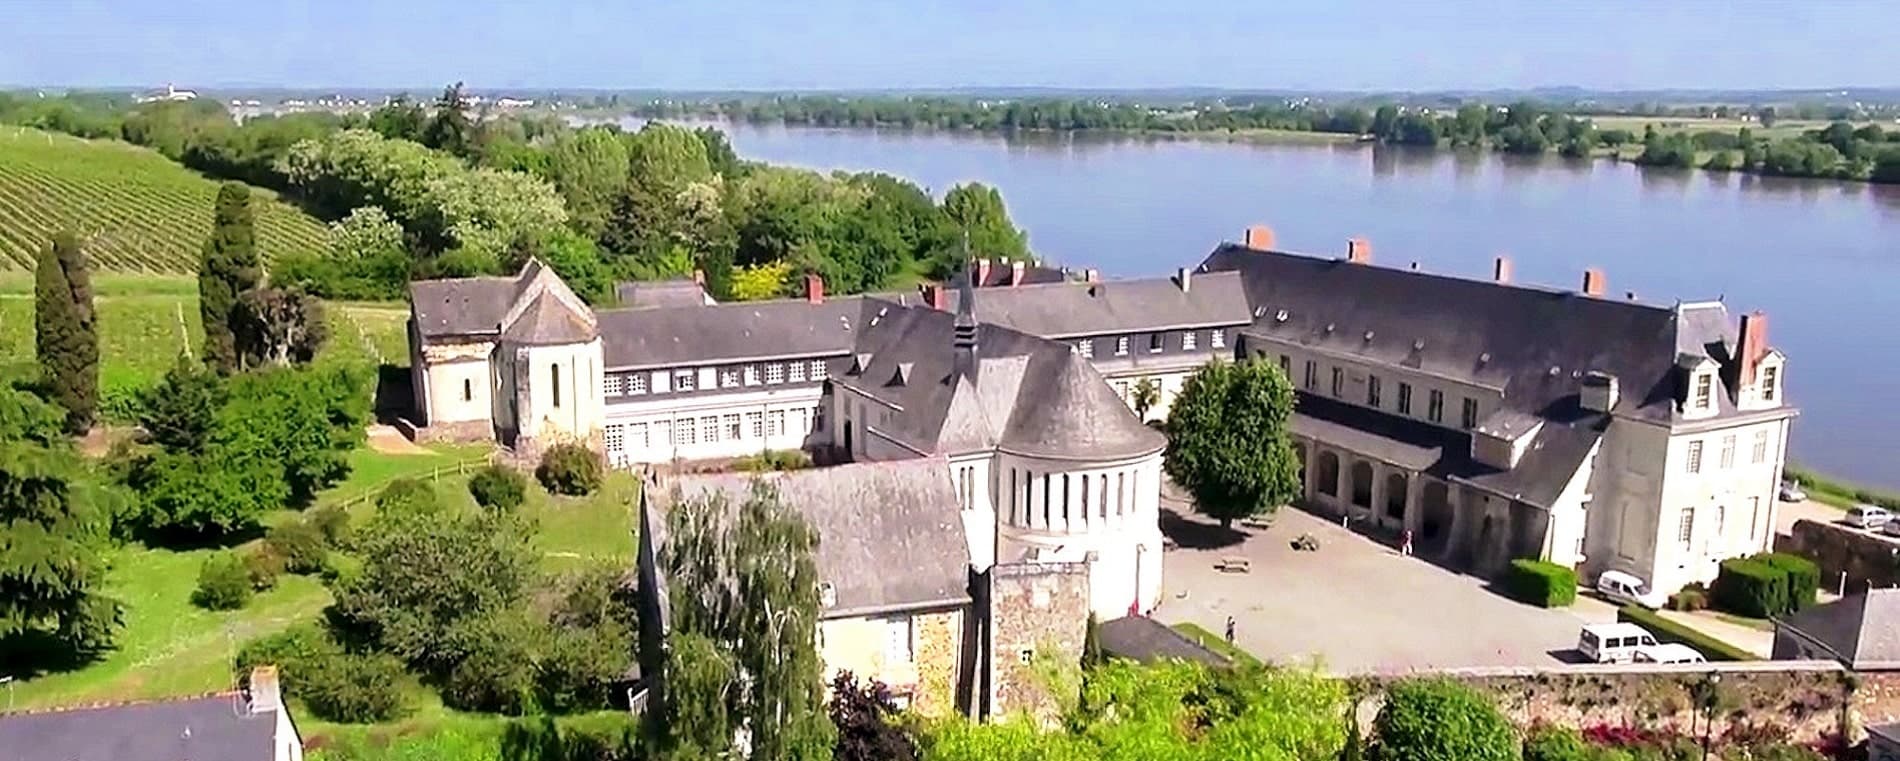 Abbaye de St Maur - colonie de vacances et classes decouvertes